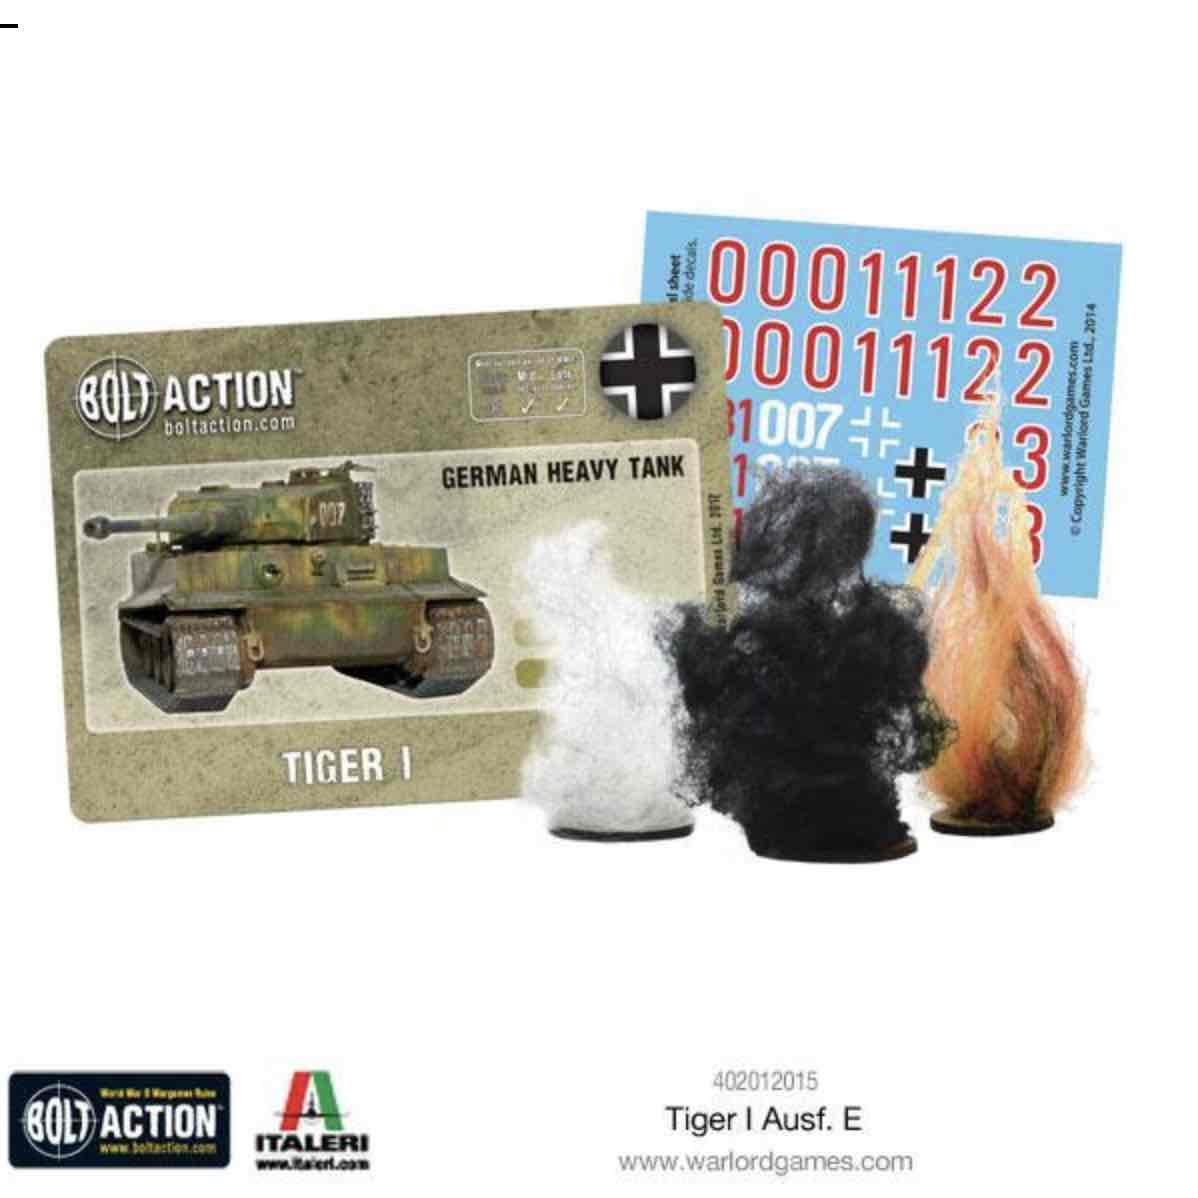 402012015 tiger I ausf E cards